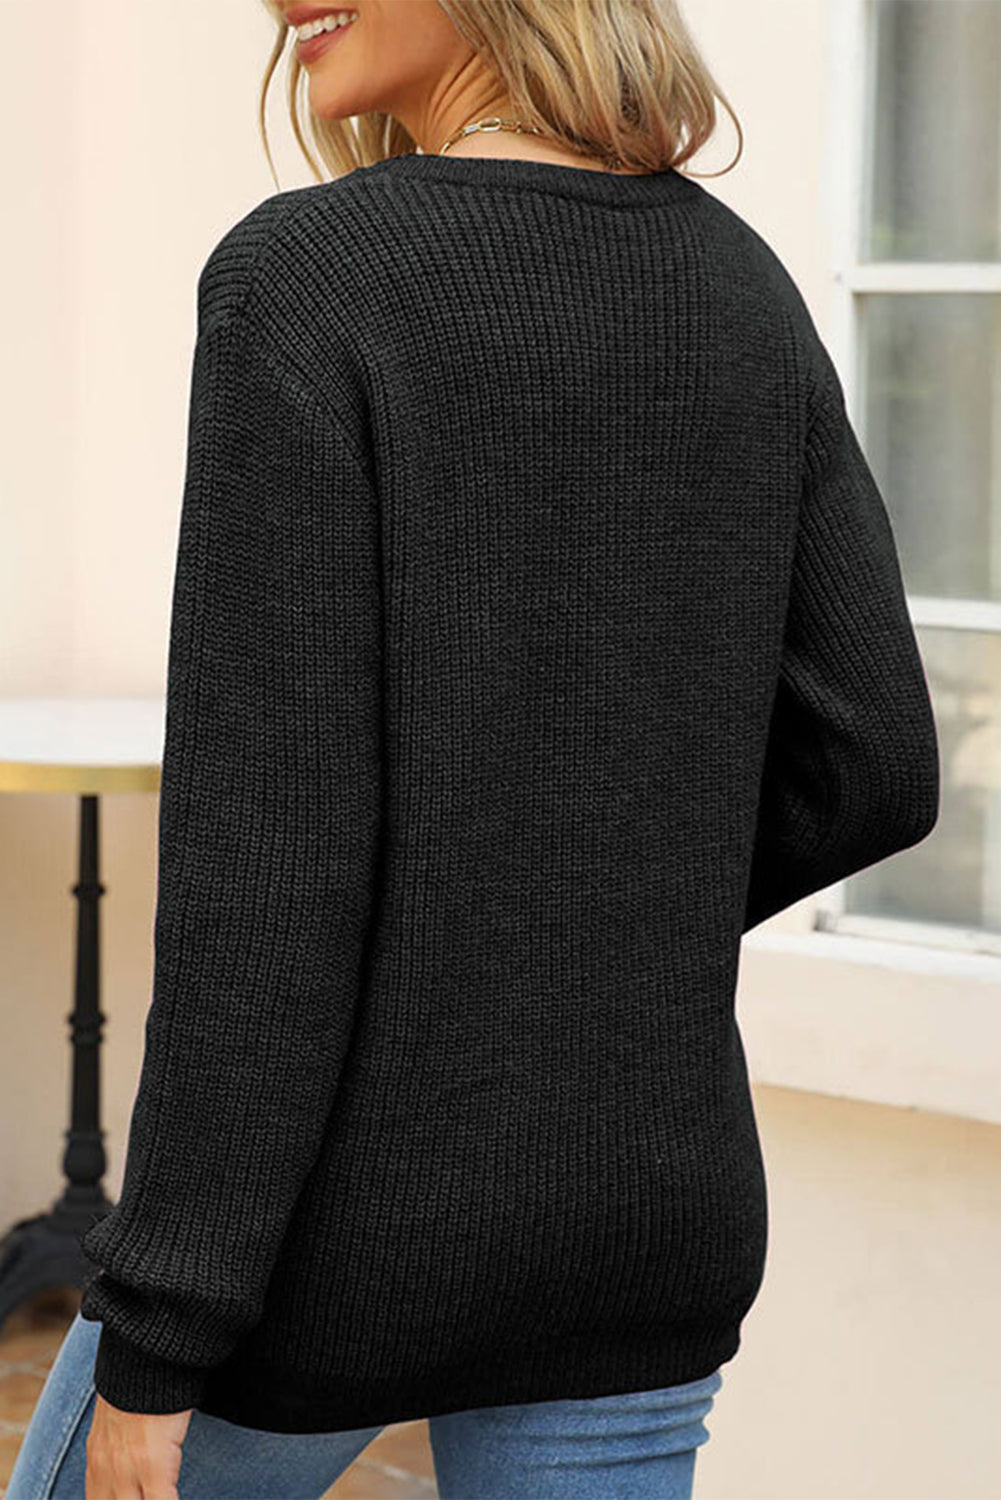 Crni pulover s okruglim izrezom u obliku srca za Valentinovo